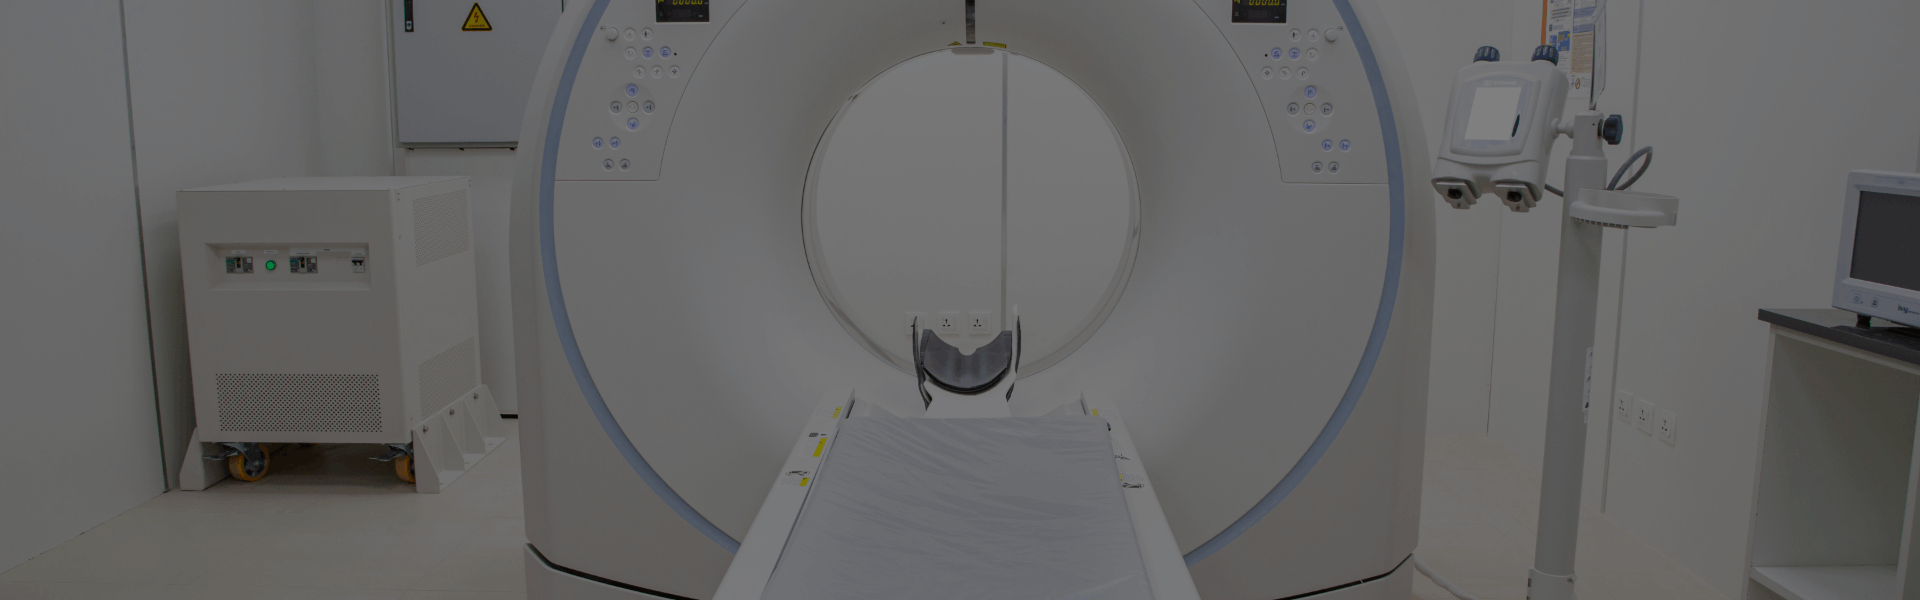 Upright Open MRI